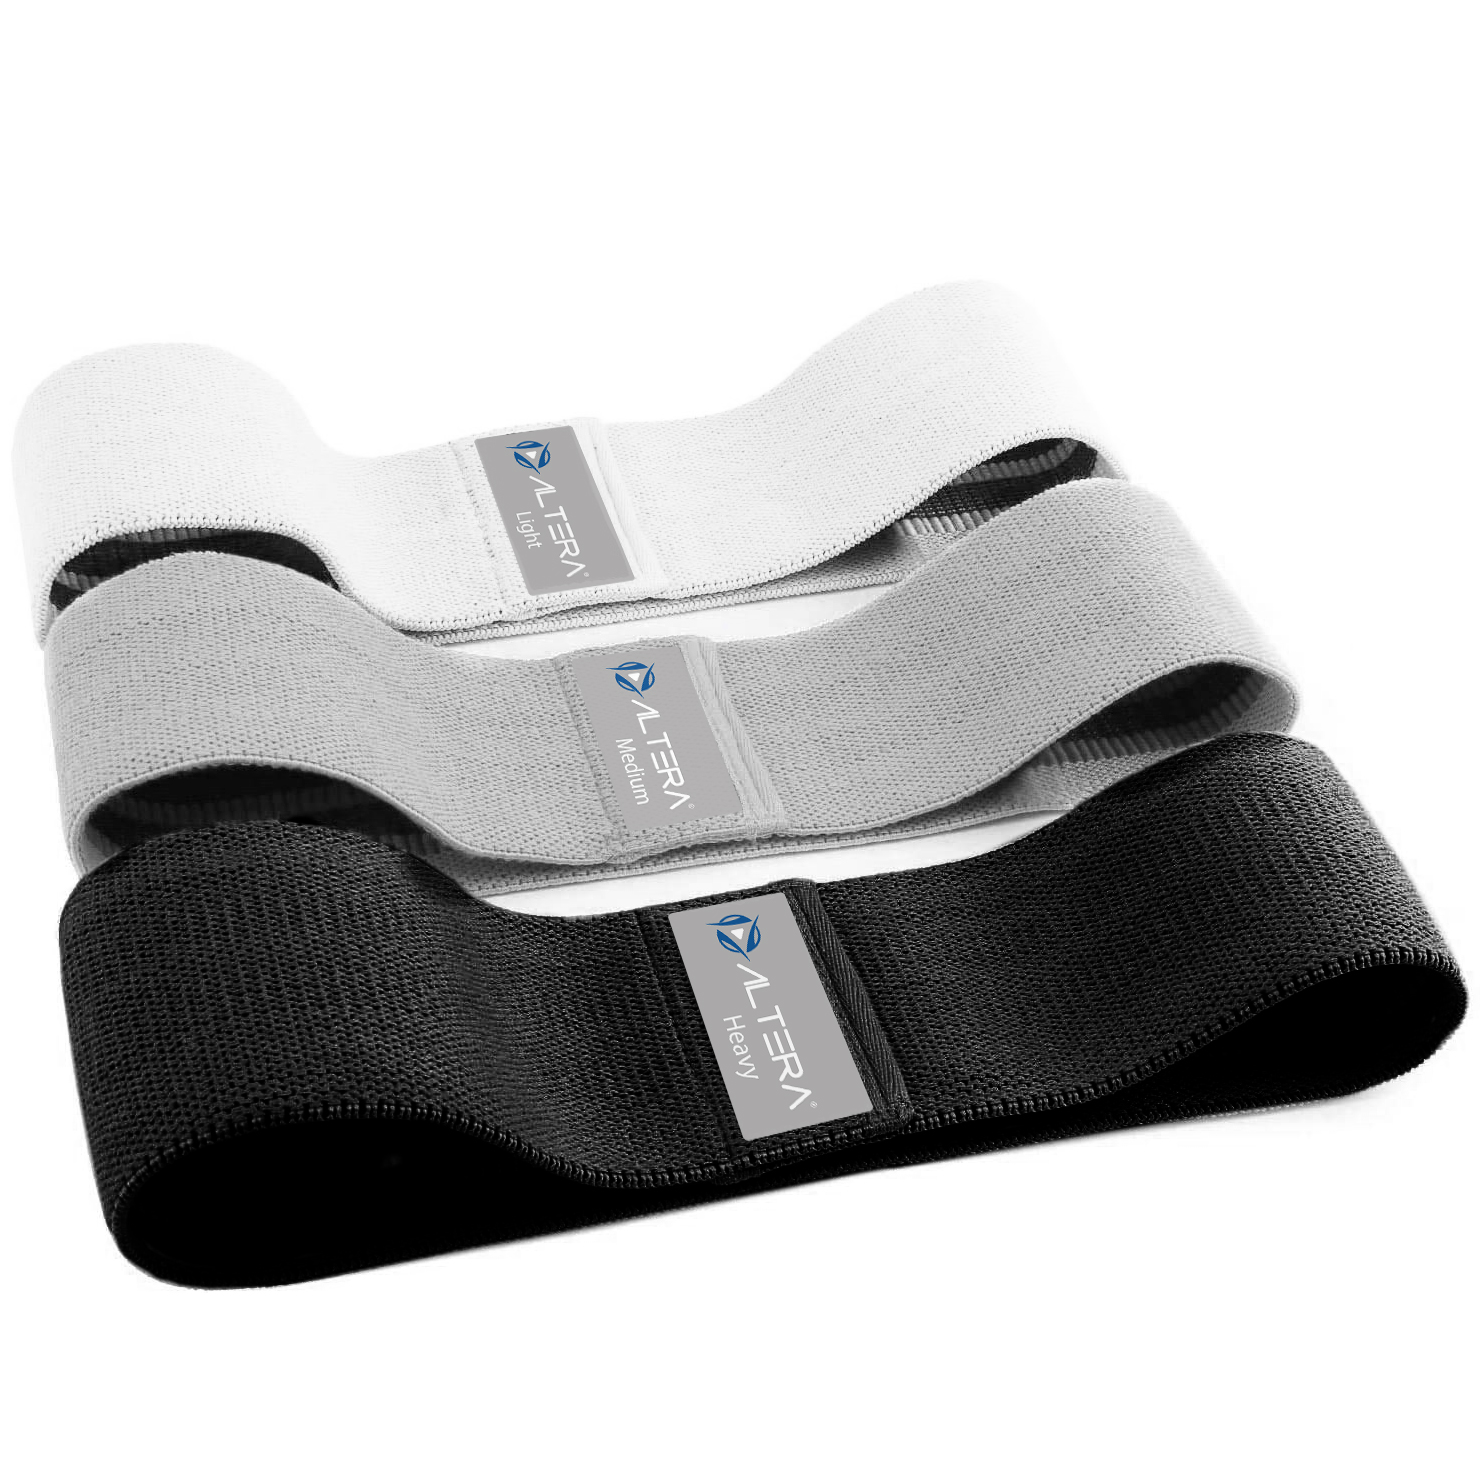 Kit completo de bandas elásticas de musculación con asas - Resistencia  regulable equivalente al peso de 5 a 68kg - Pack de 13 accesorios para bandas  elásticas de musculación Sincero Electrónica